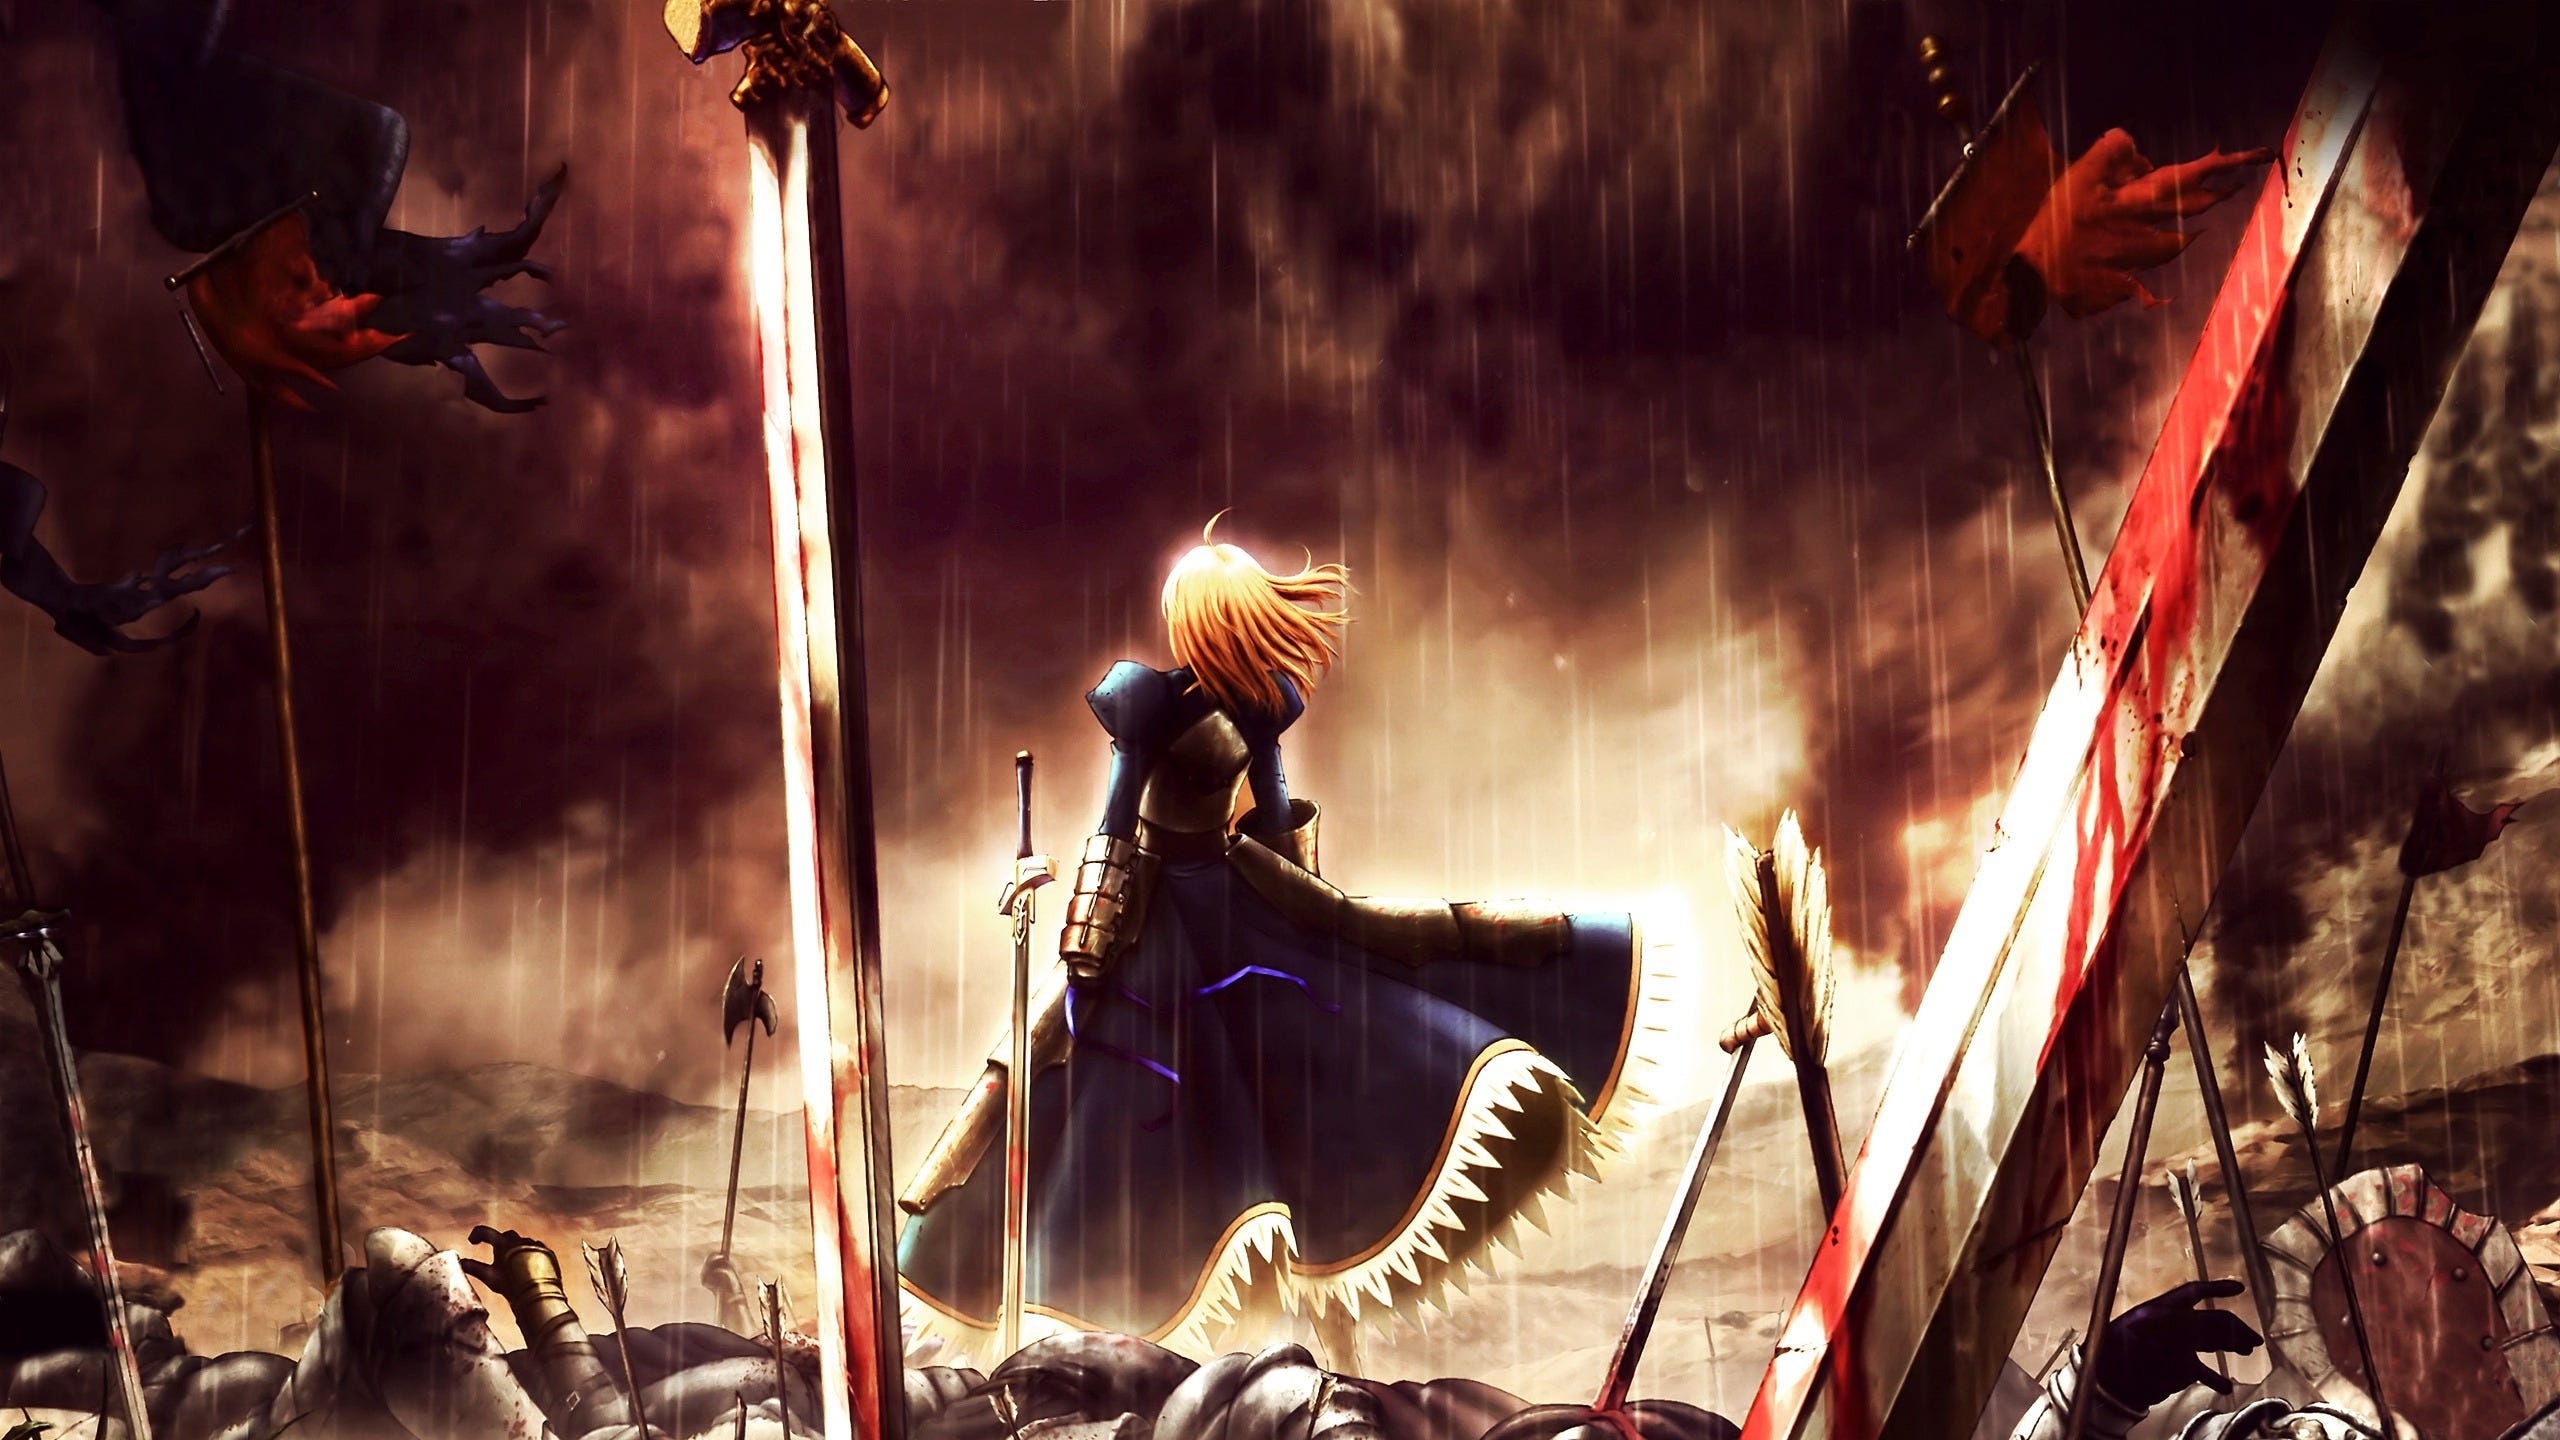 Fate Unlimited Blade Works - Conheça os principais personagens